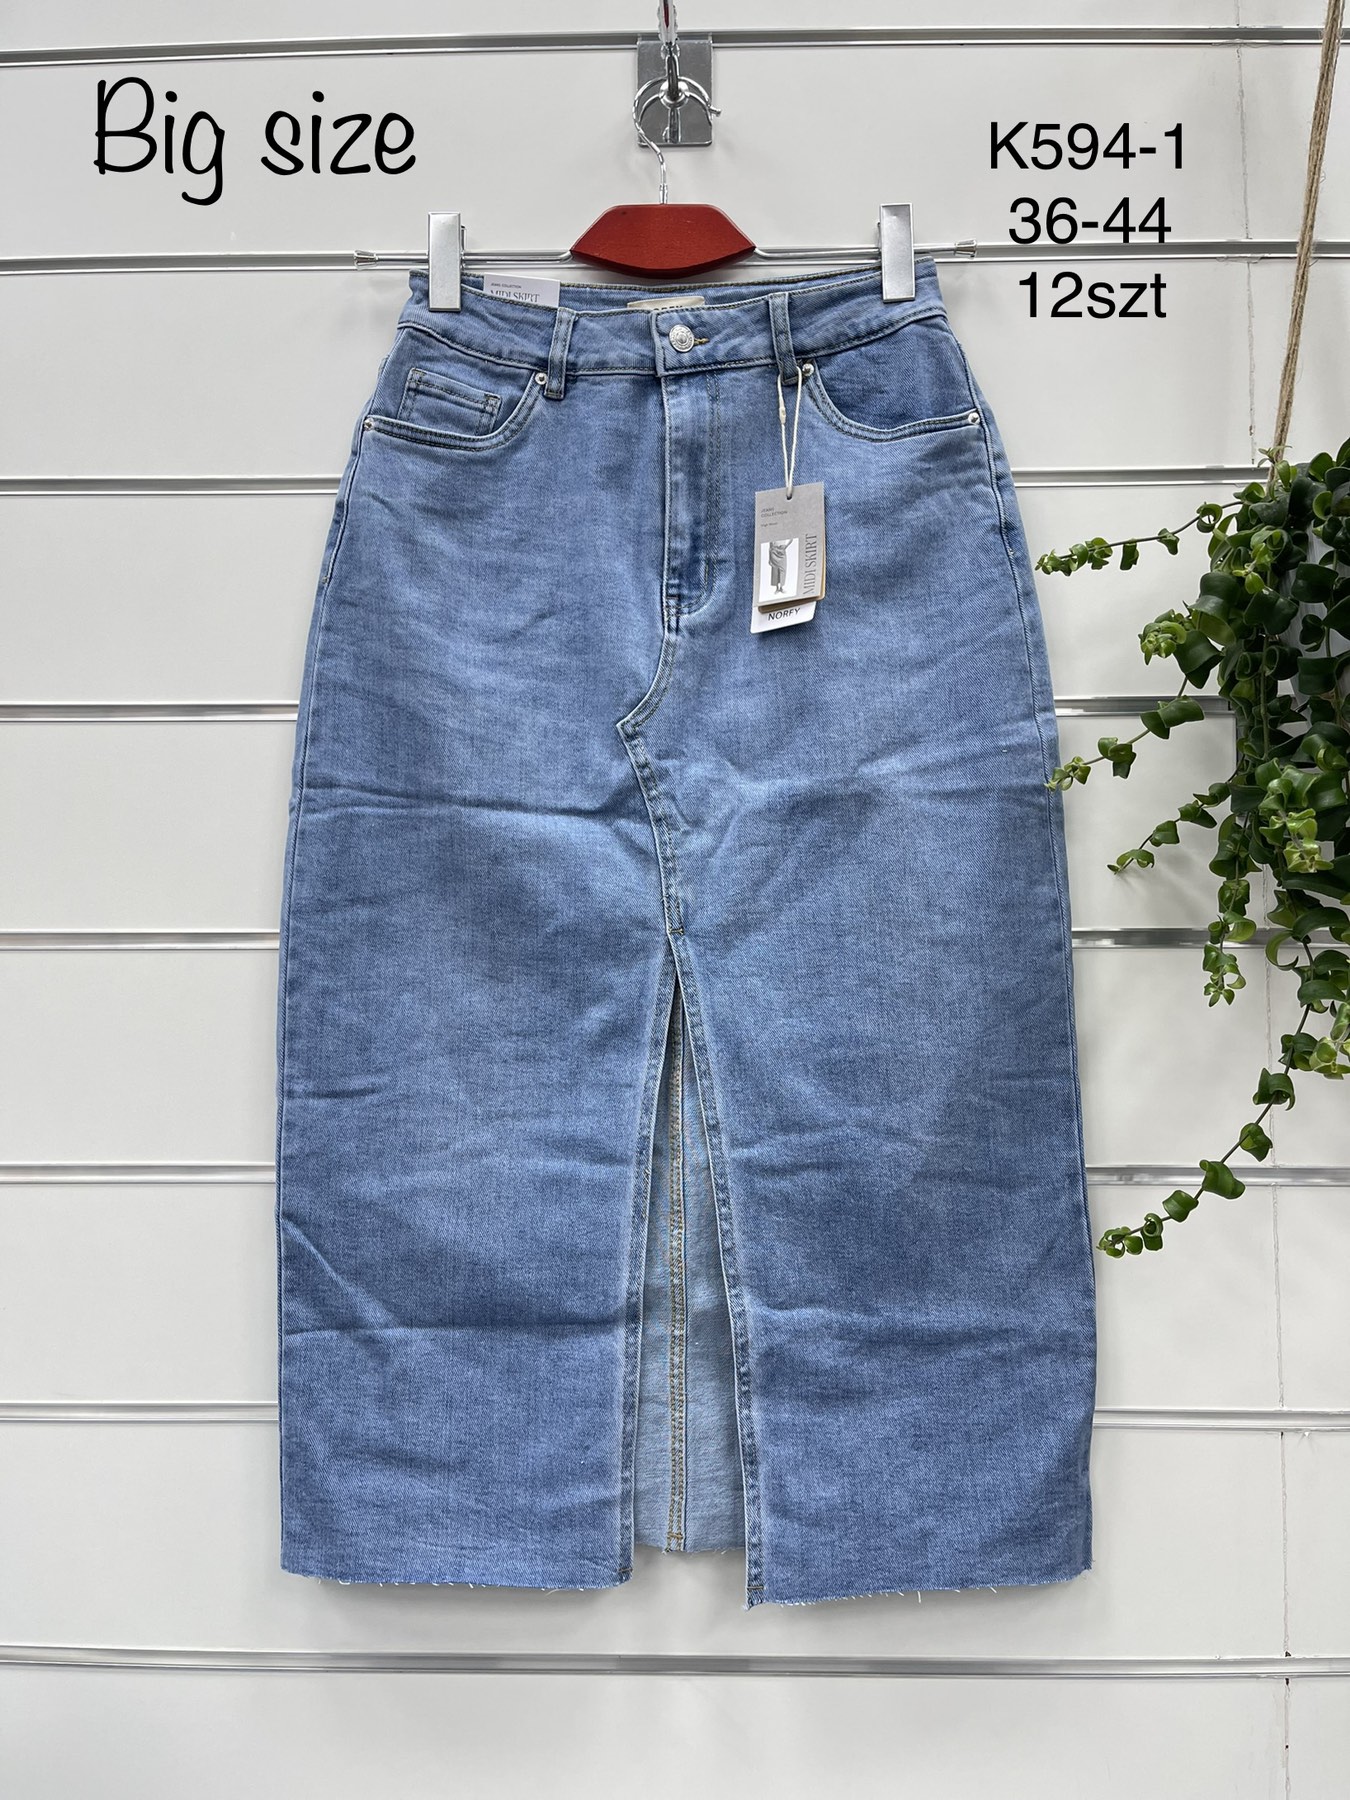 Spódnica   damskie jeans Roz 36-44.  1 kolor . Paczka 12szt